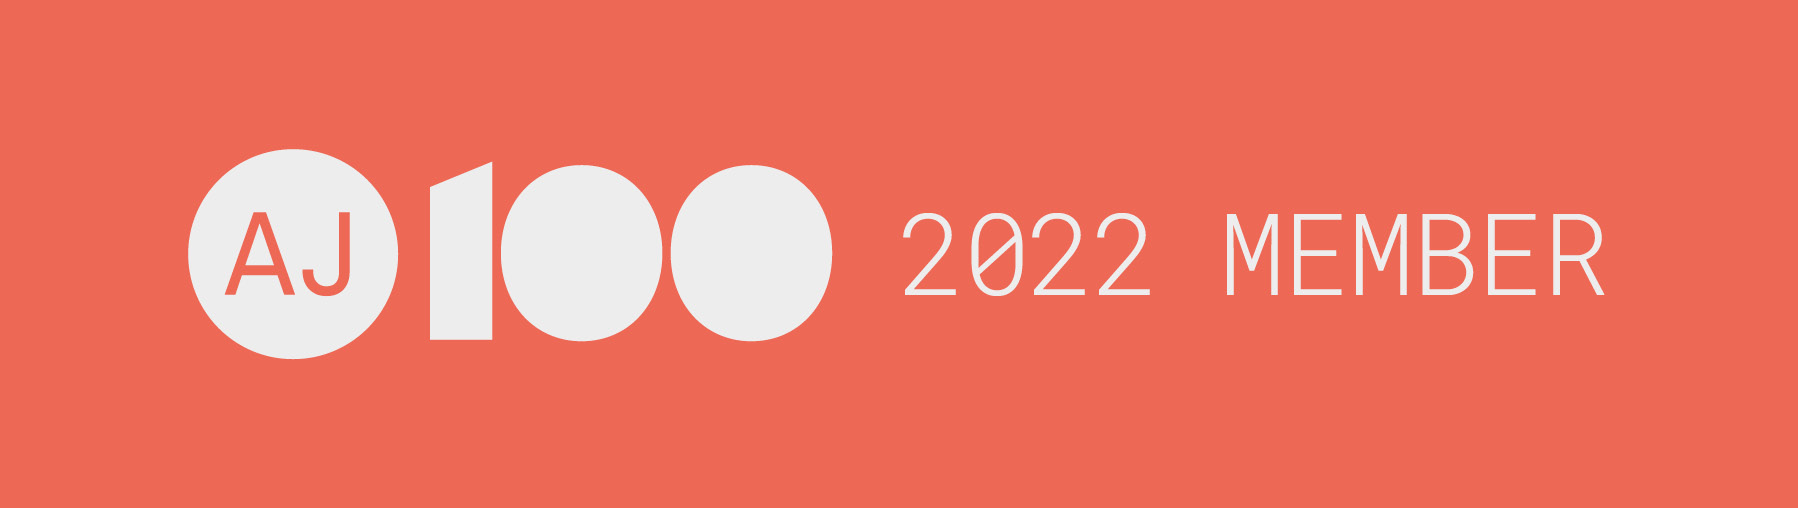 AJ100 2022 - 2022